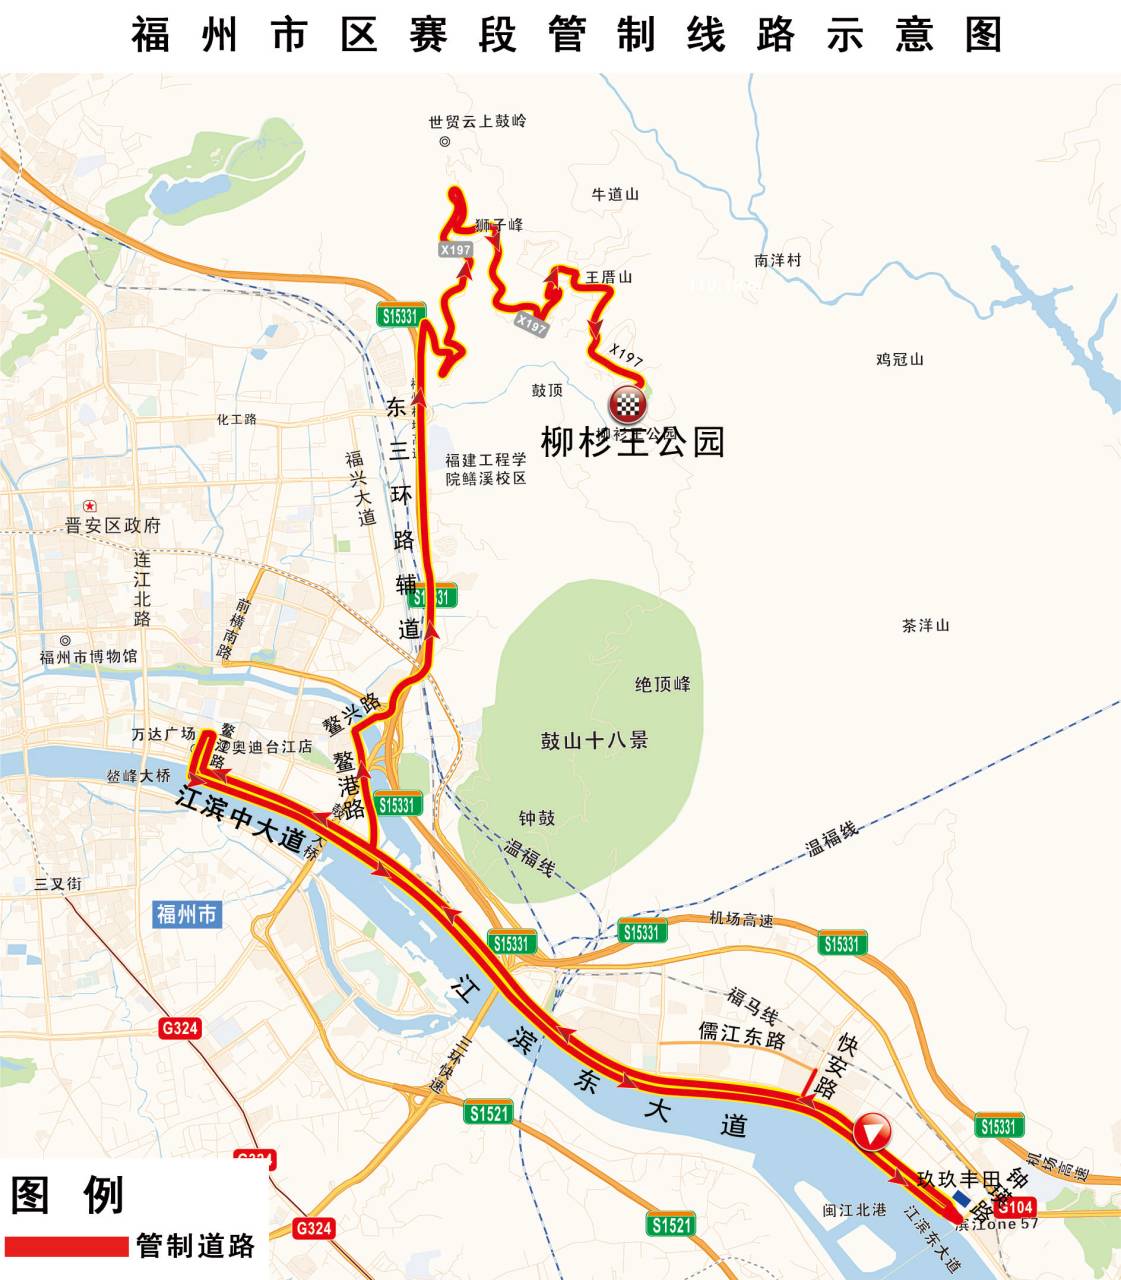 环福州·永泰自行车赛16日开赛 多条路交通管制